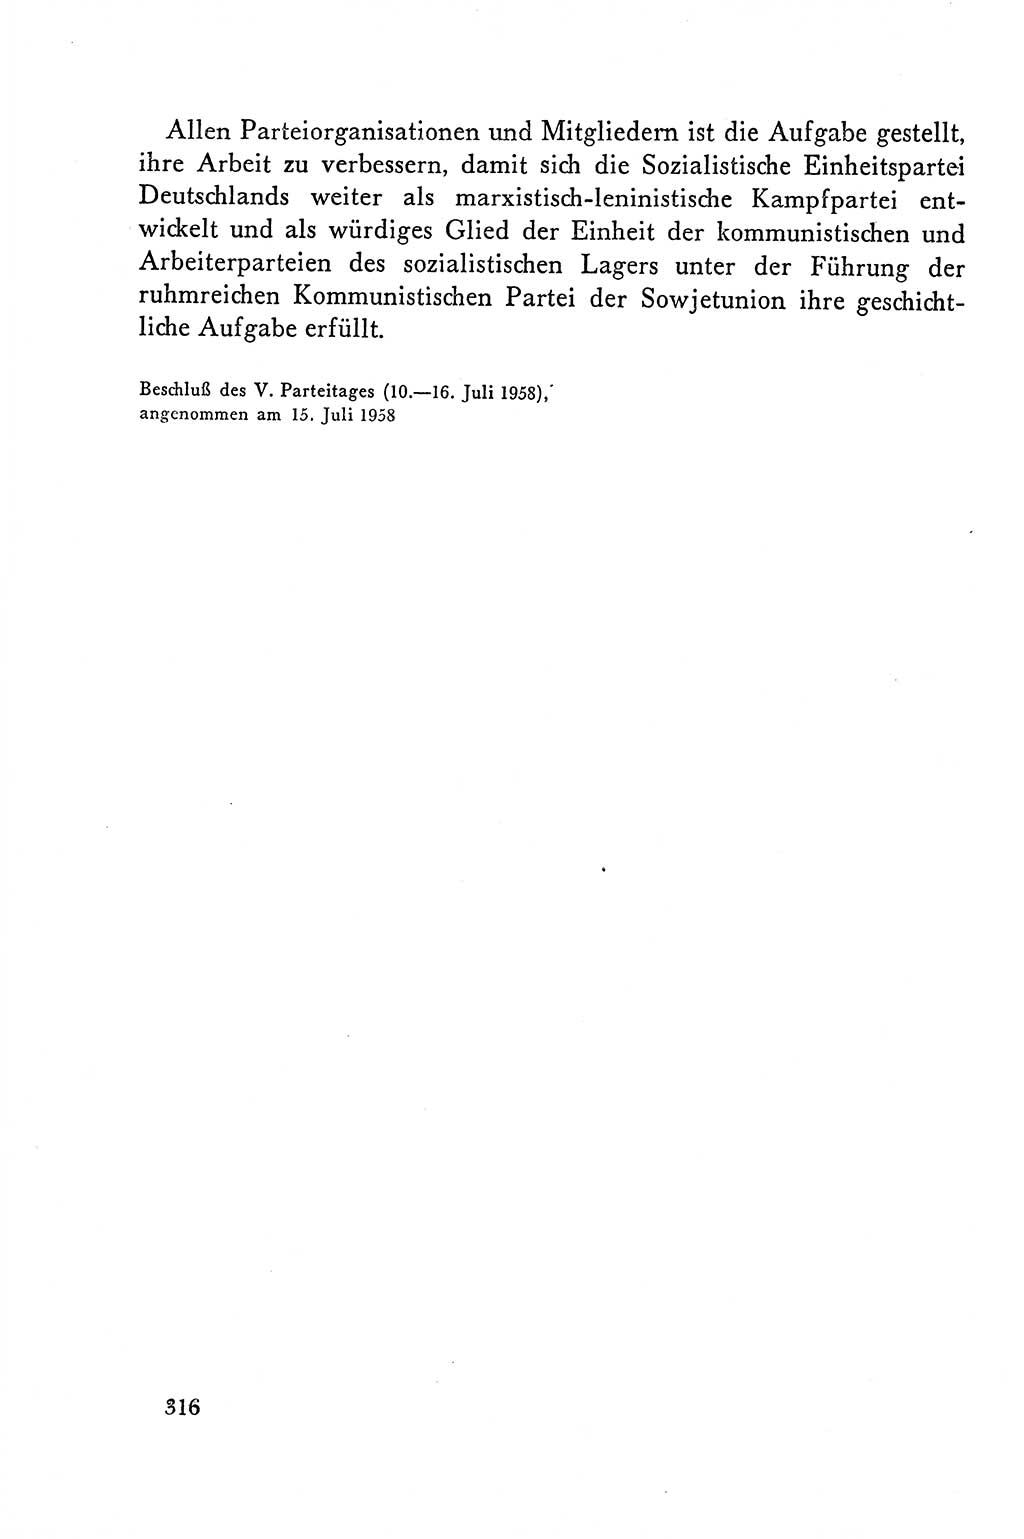 Dokumente der Sozialistischen Einheitspartei Deutschlands (SED) [Deutsche Demokratische Republik (DDR)] 1958-1959, Seite 316 (Dok. SED DDR 1958-1959, S. 316)